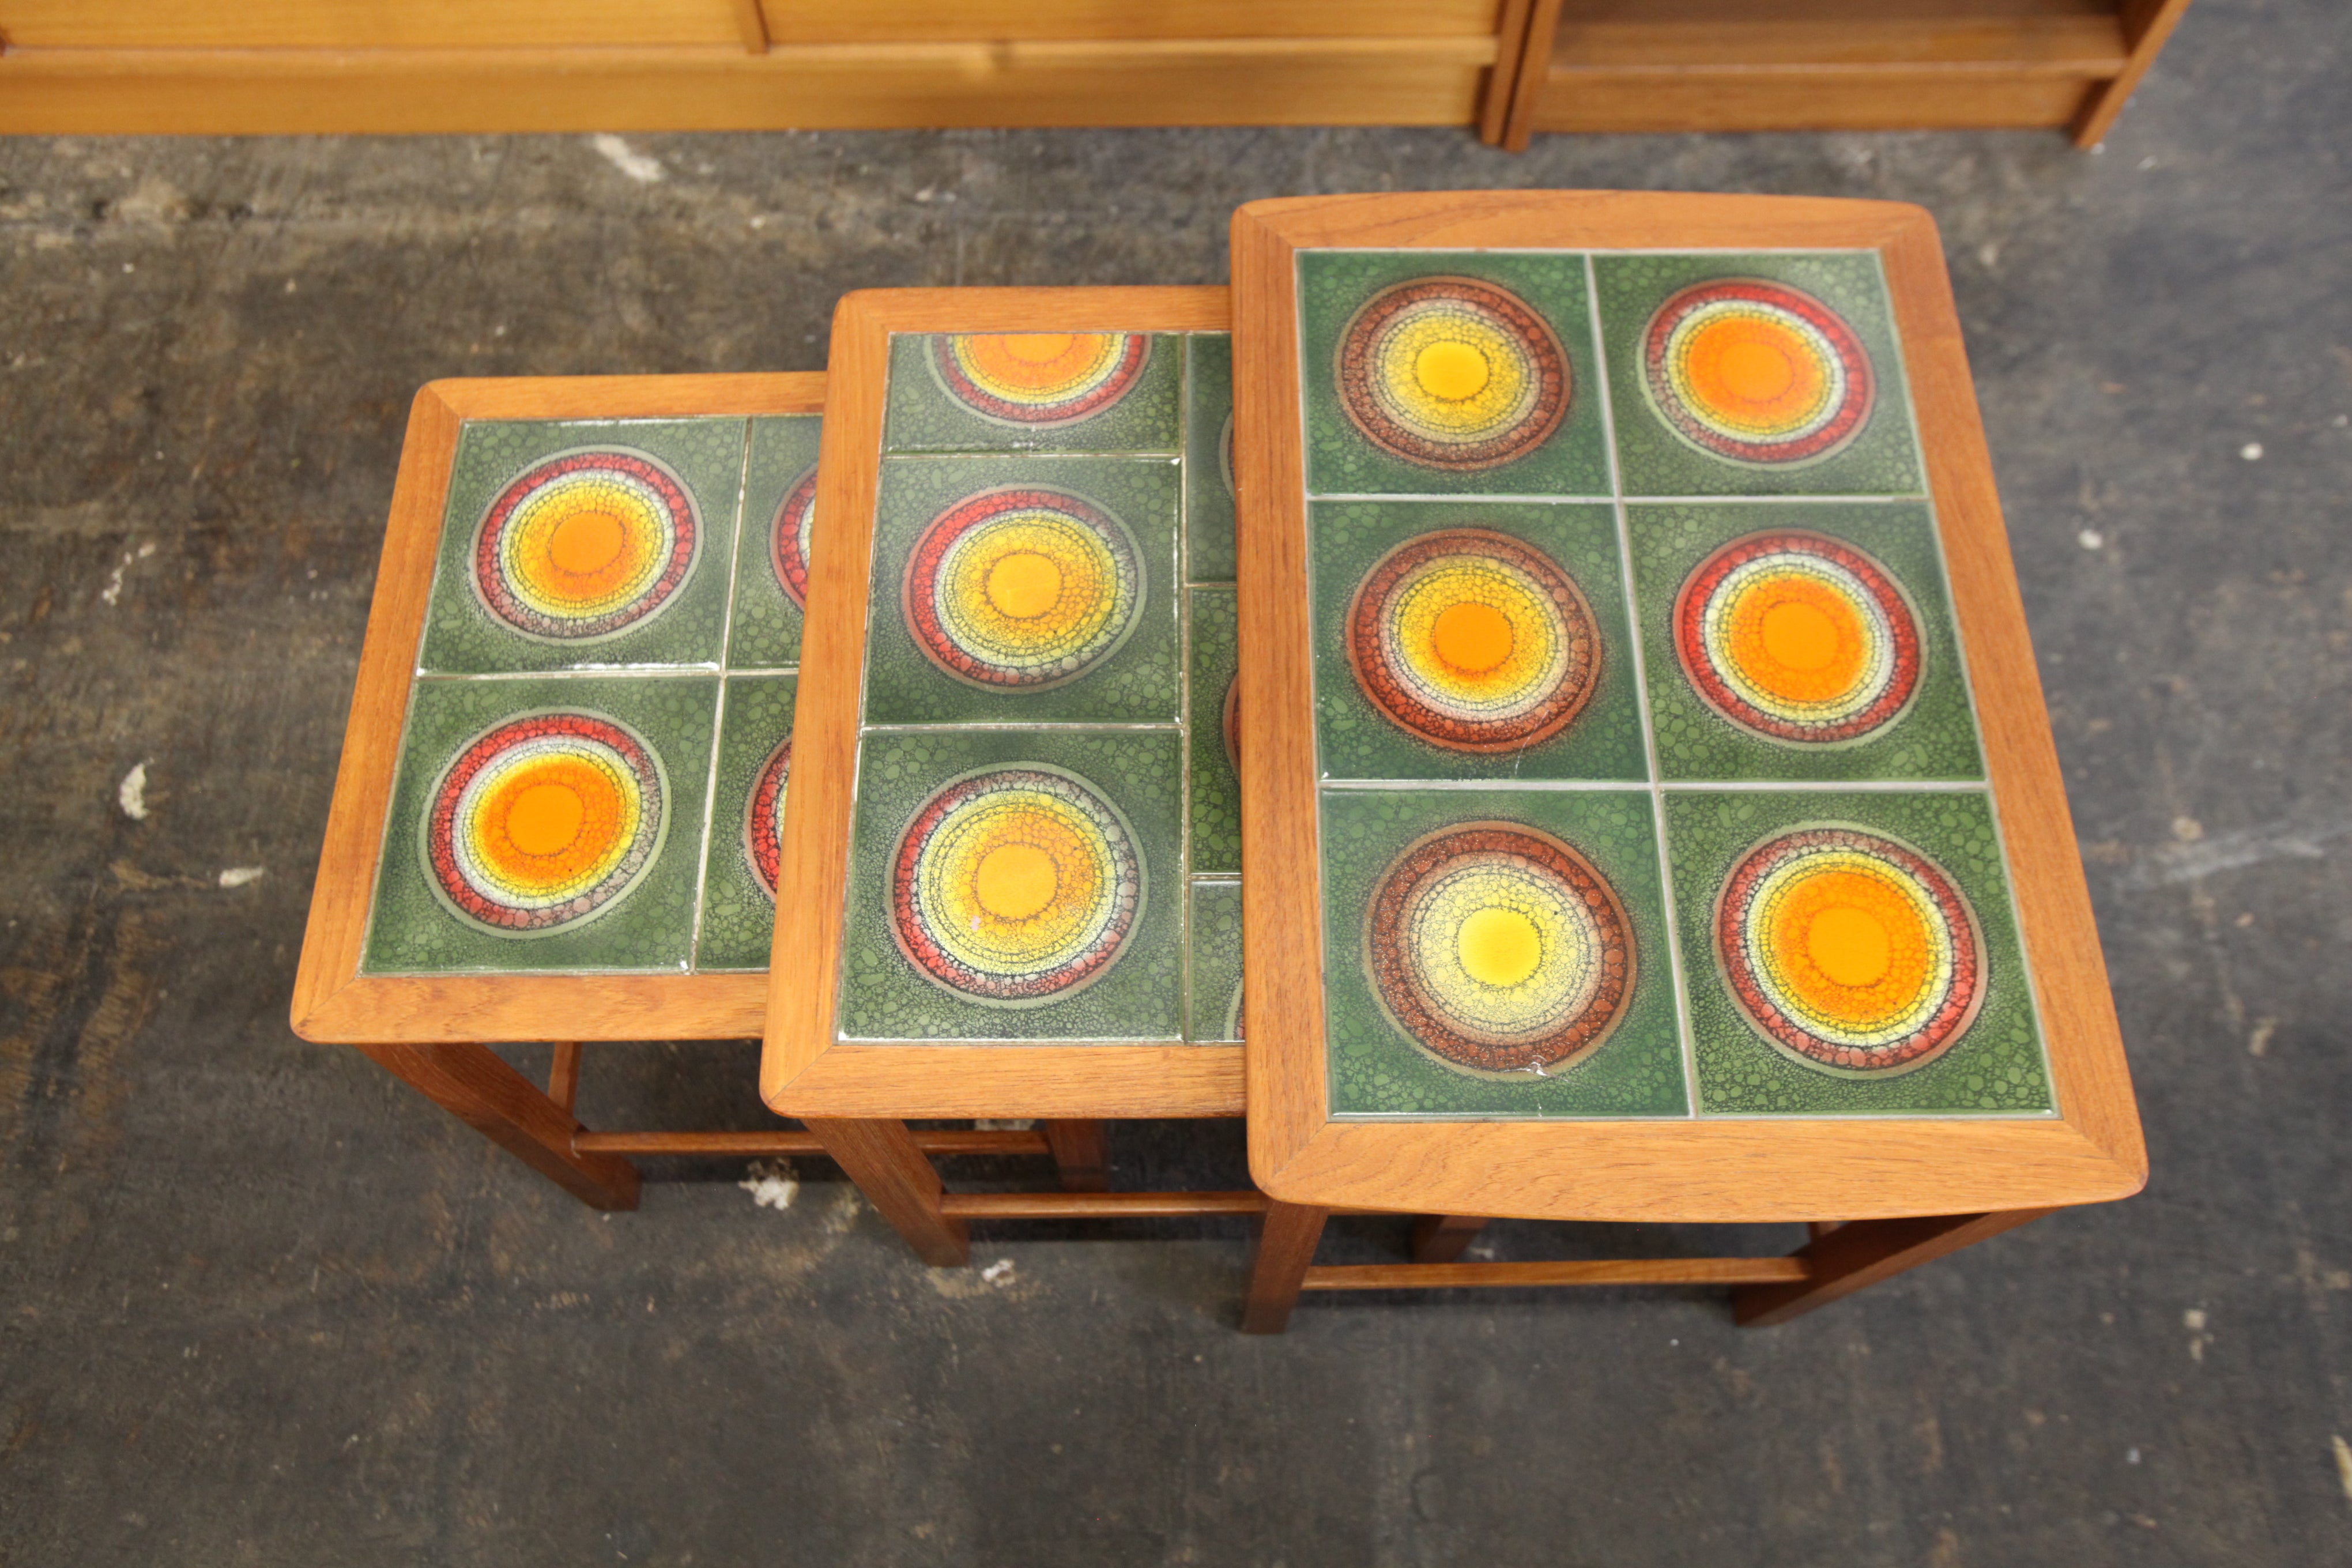 Vintage Teak & Tile 3 piece Nesting Table Set (21.25" x 14.75" x 19"H)